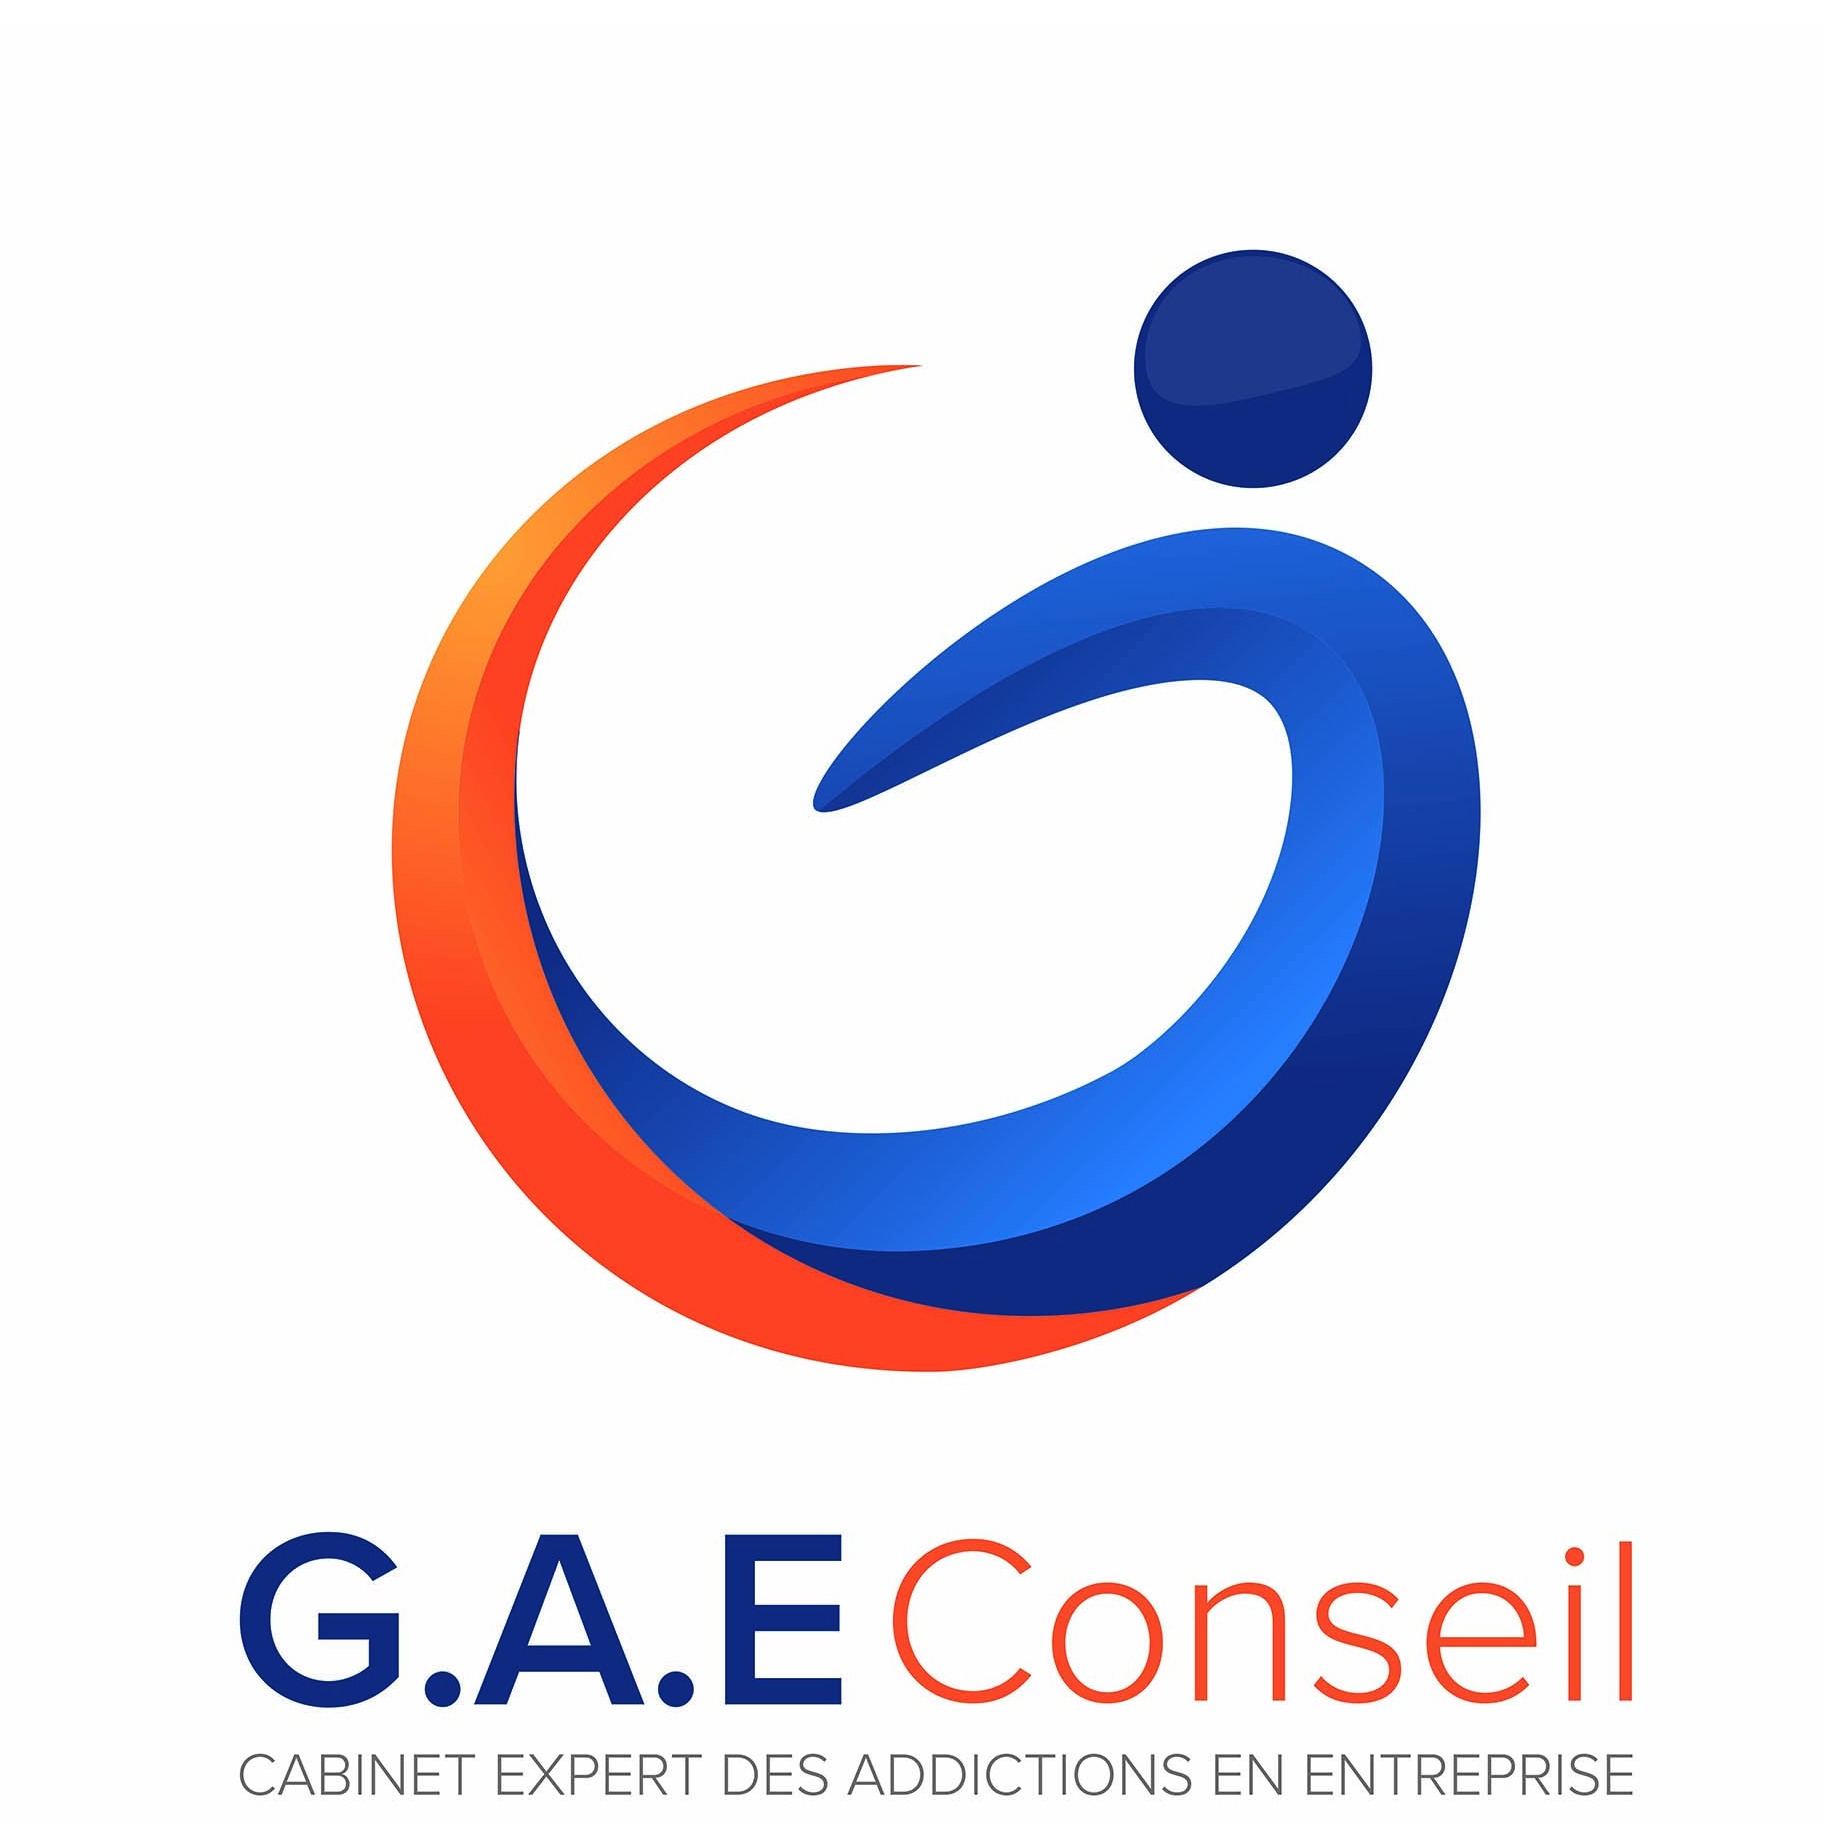 the GAE Conseil logo.